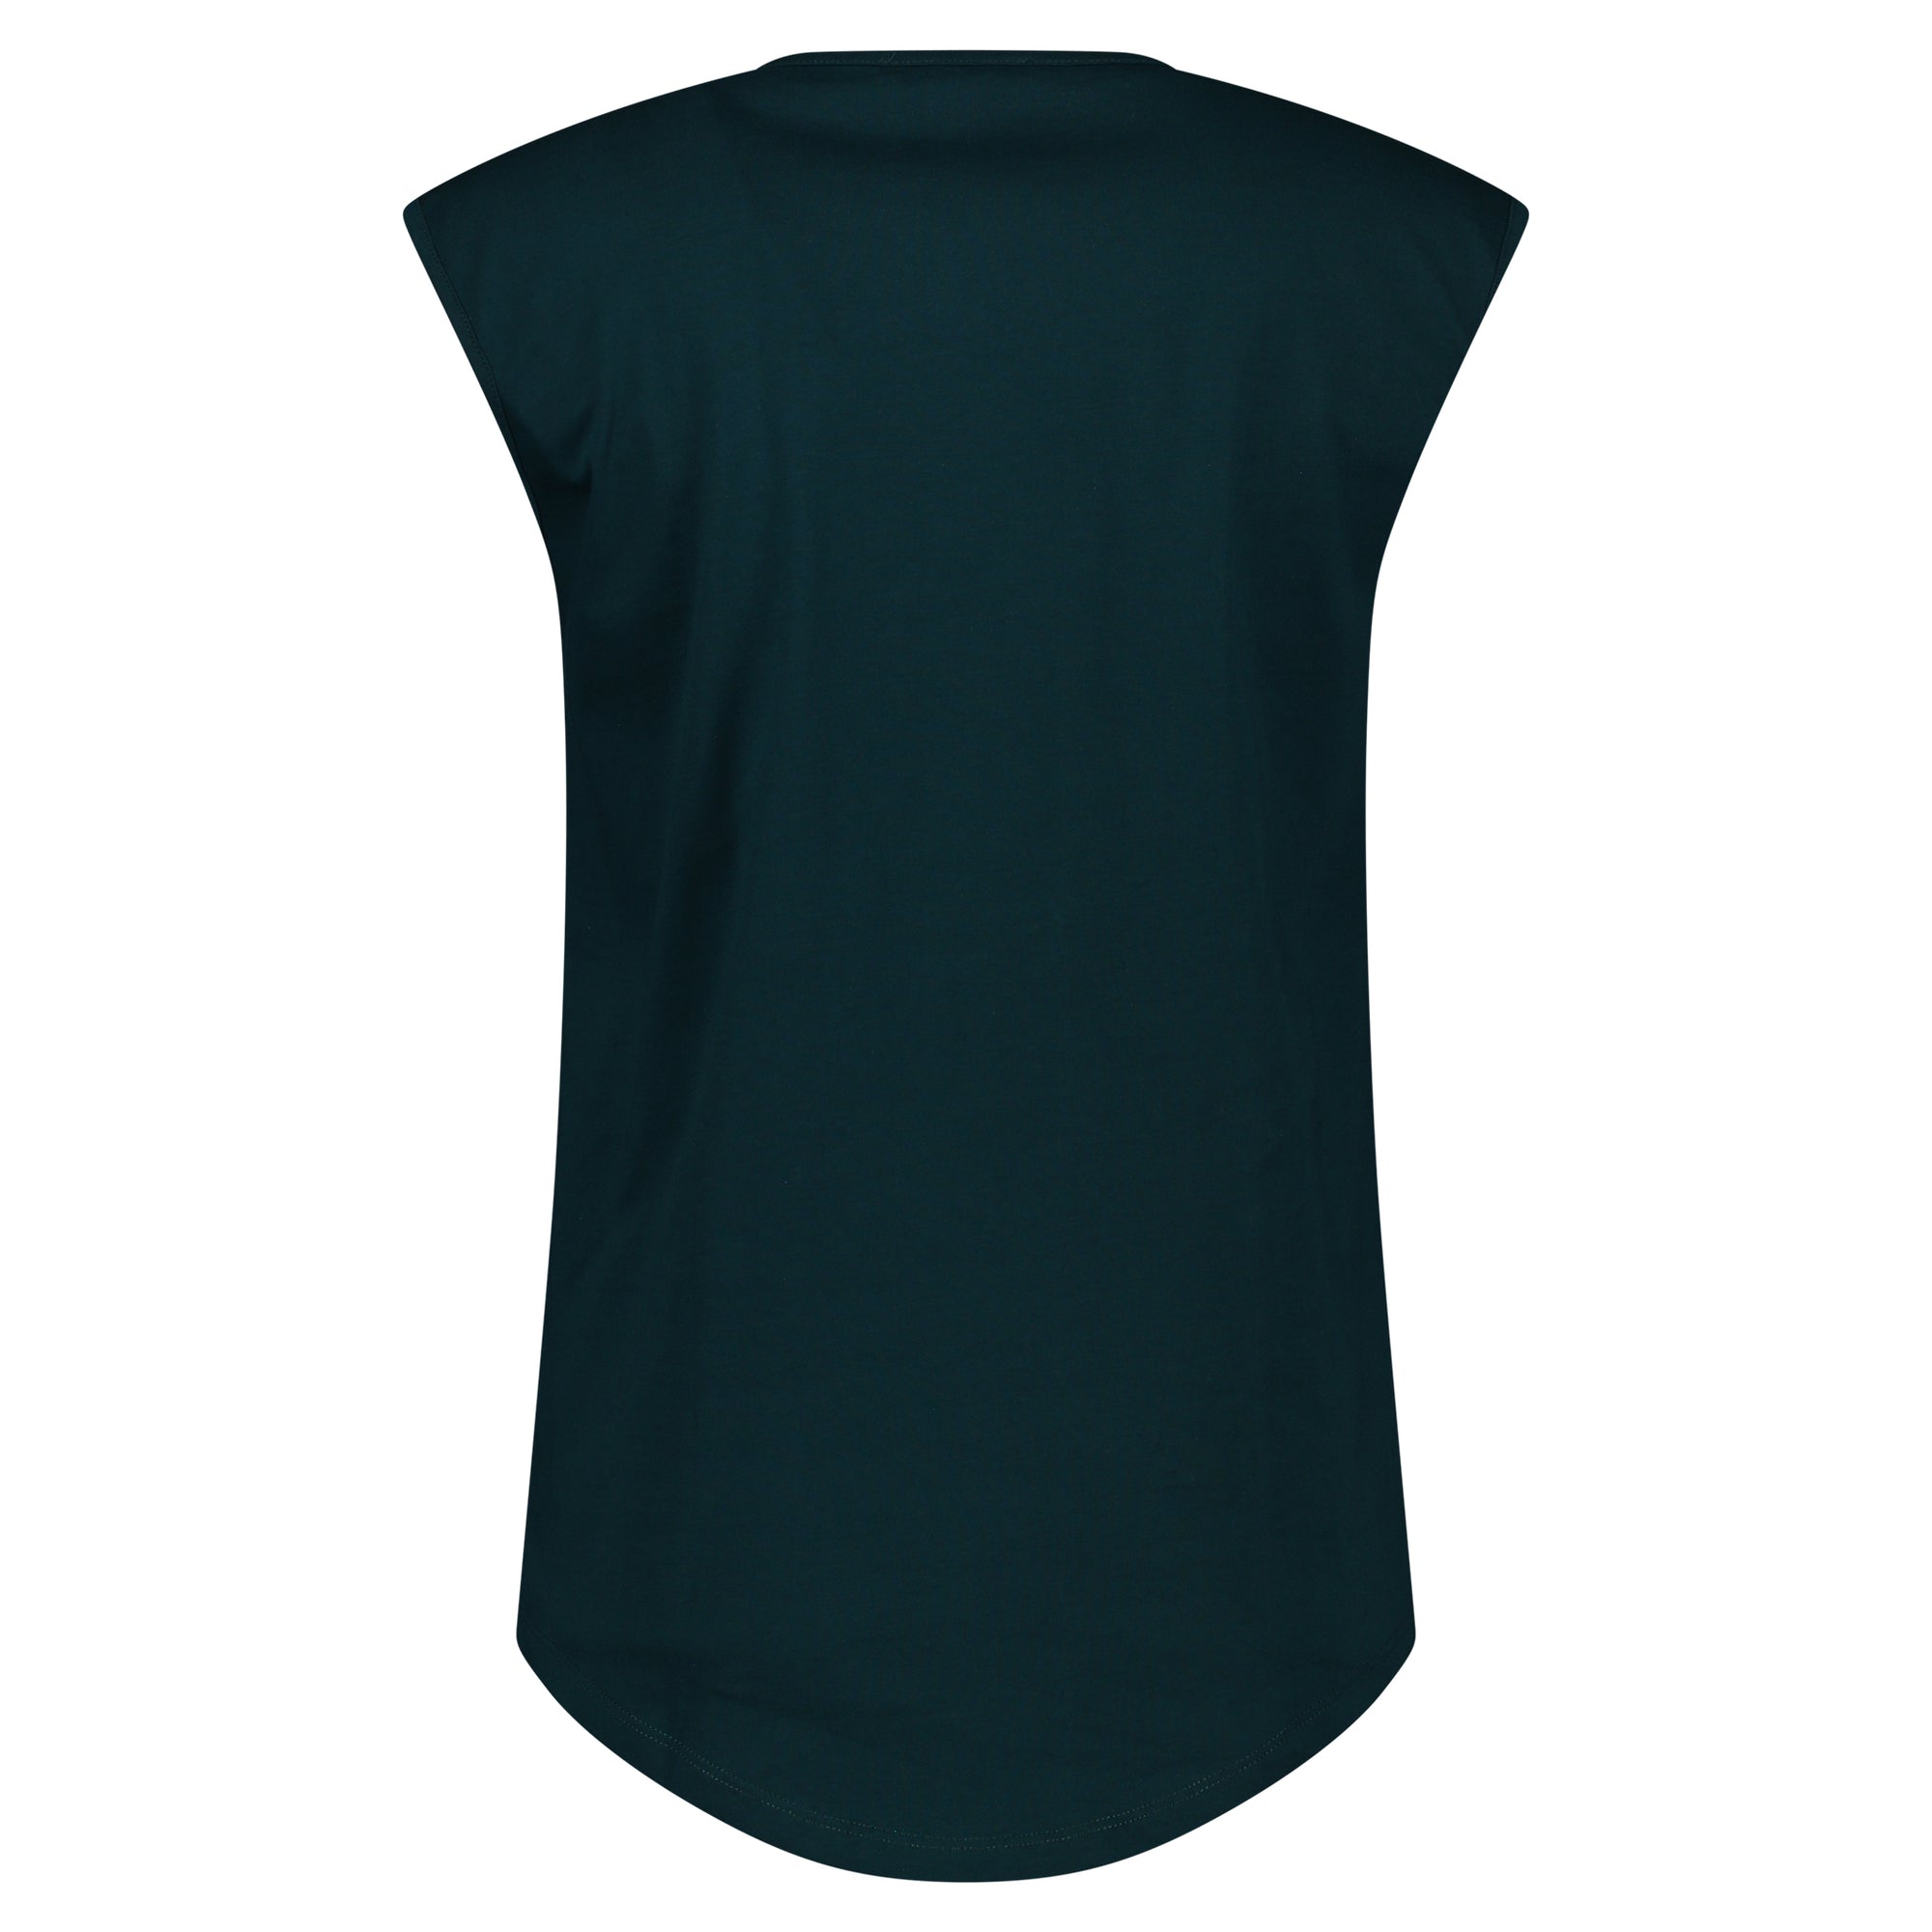 Balmain Green Vest T-Shirt